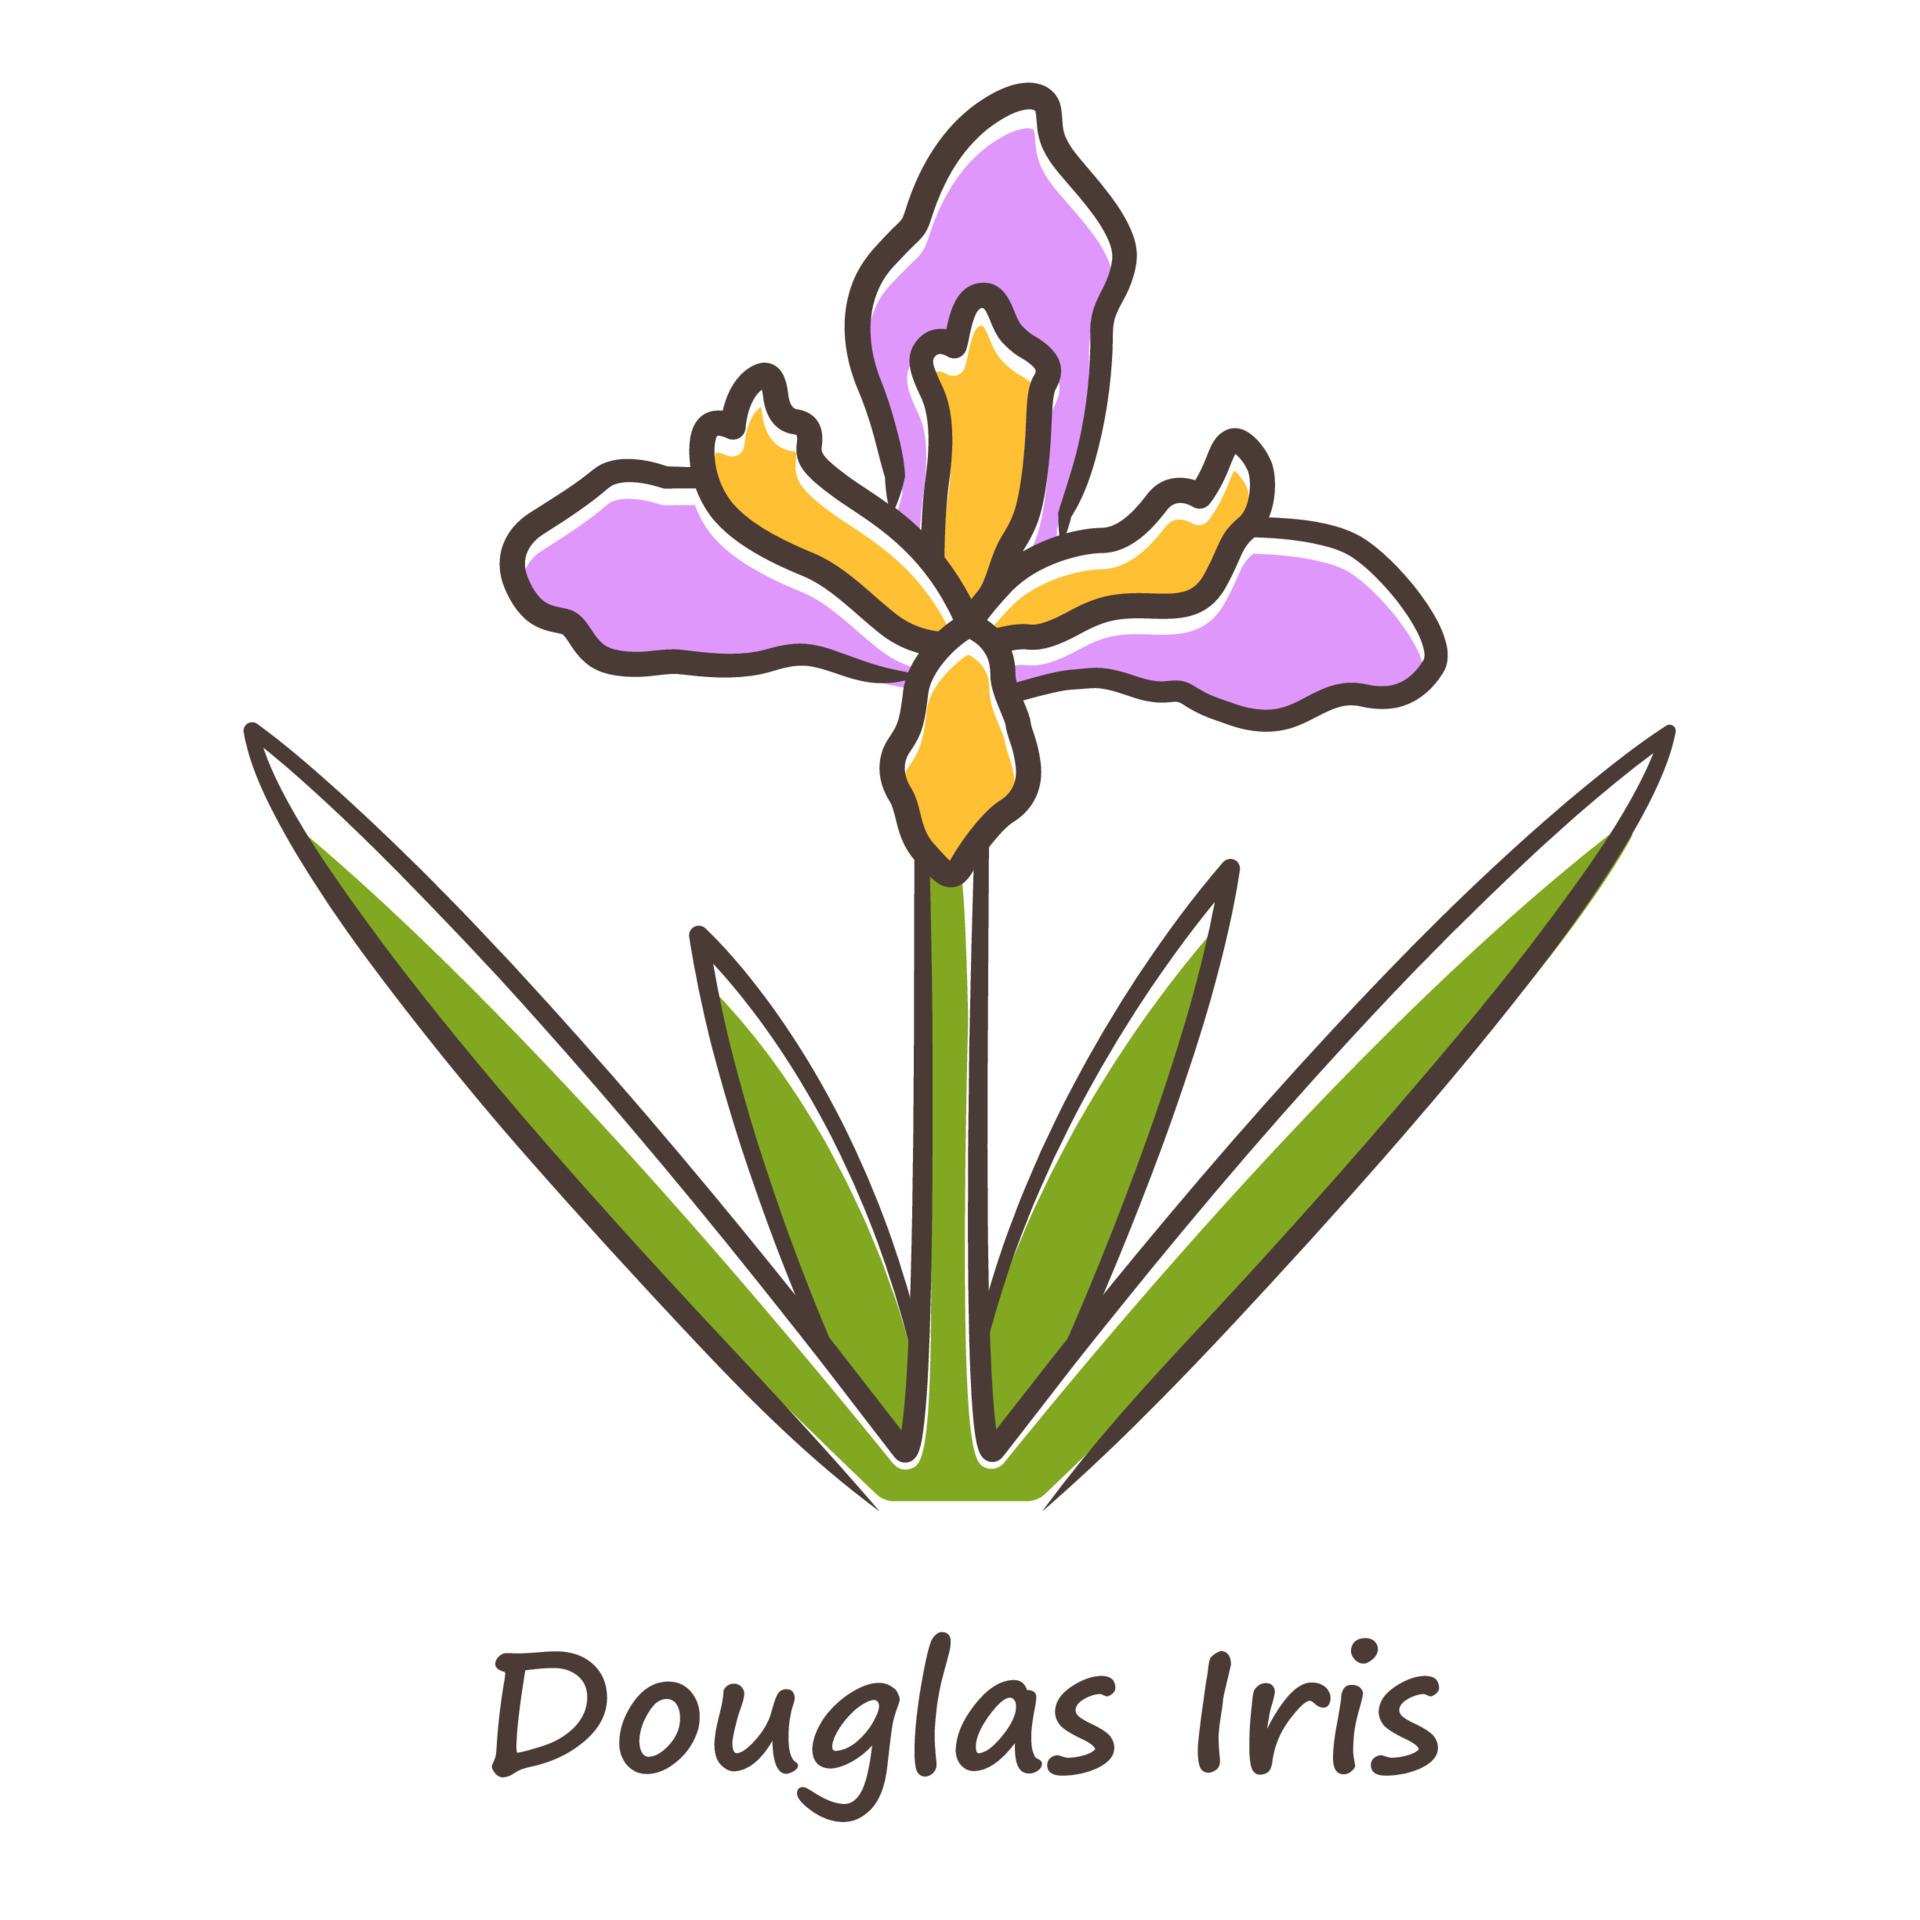 douglas iris planta icono de color púrpura. flor silvestre floreciente de  california con inscripción de nombre. flor de jardín, hierba.  Inflorescencia de iris douglasiana. flor de primavera. ilustración  vectorial aislada 5961630 Vector